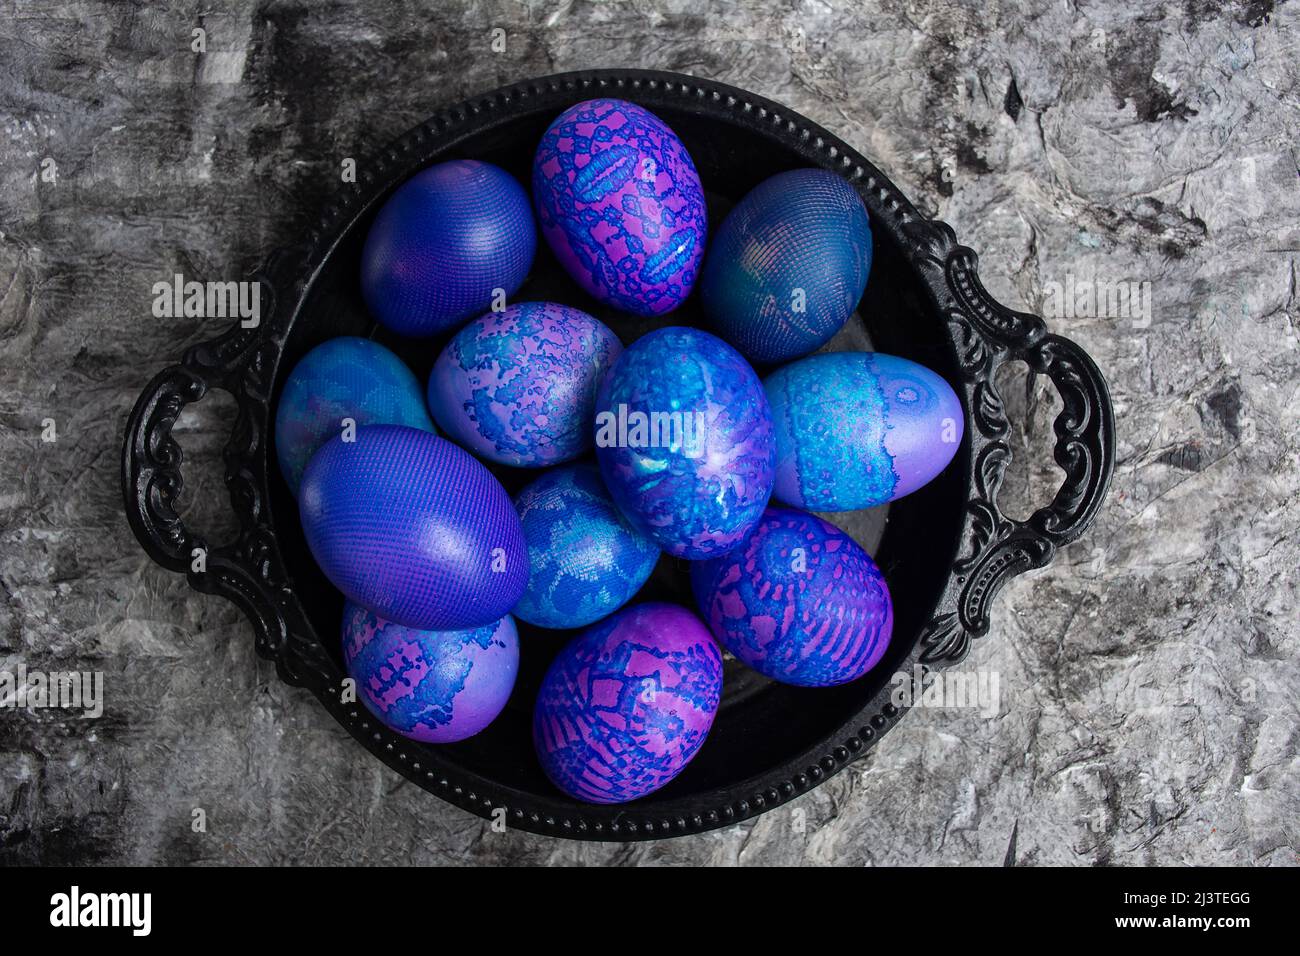 Huevos de Pascua. Huevos de Pascua azul-púrpura pintados en encaje, en un tazón negro sobre un fondo rústico negro, vista superior. Patrón de fondo de huevo. Foto de stock